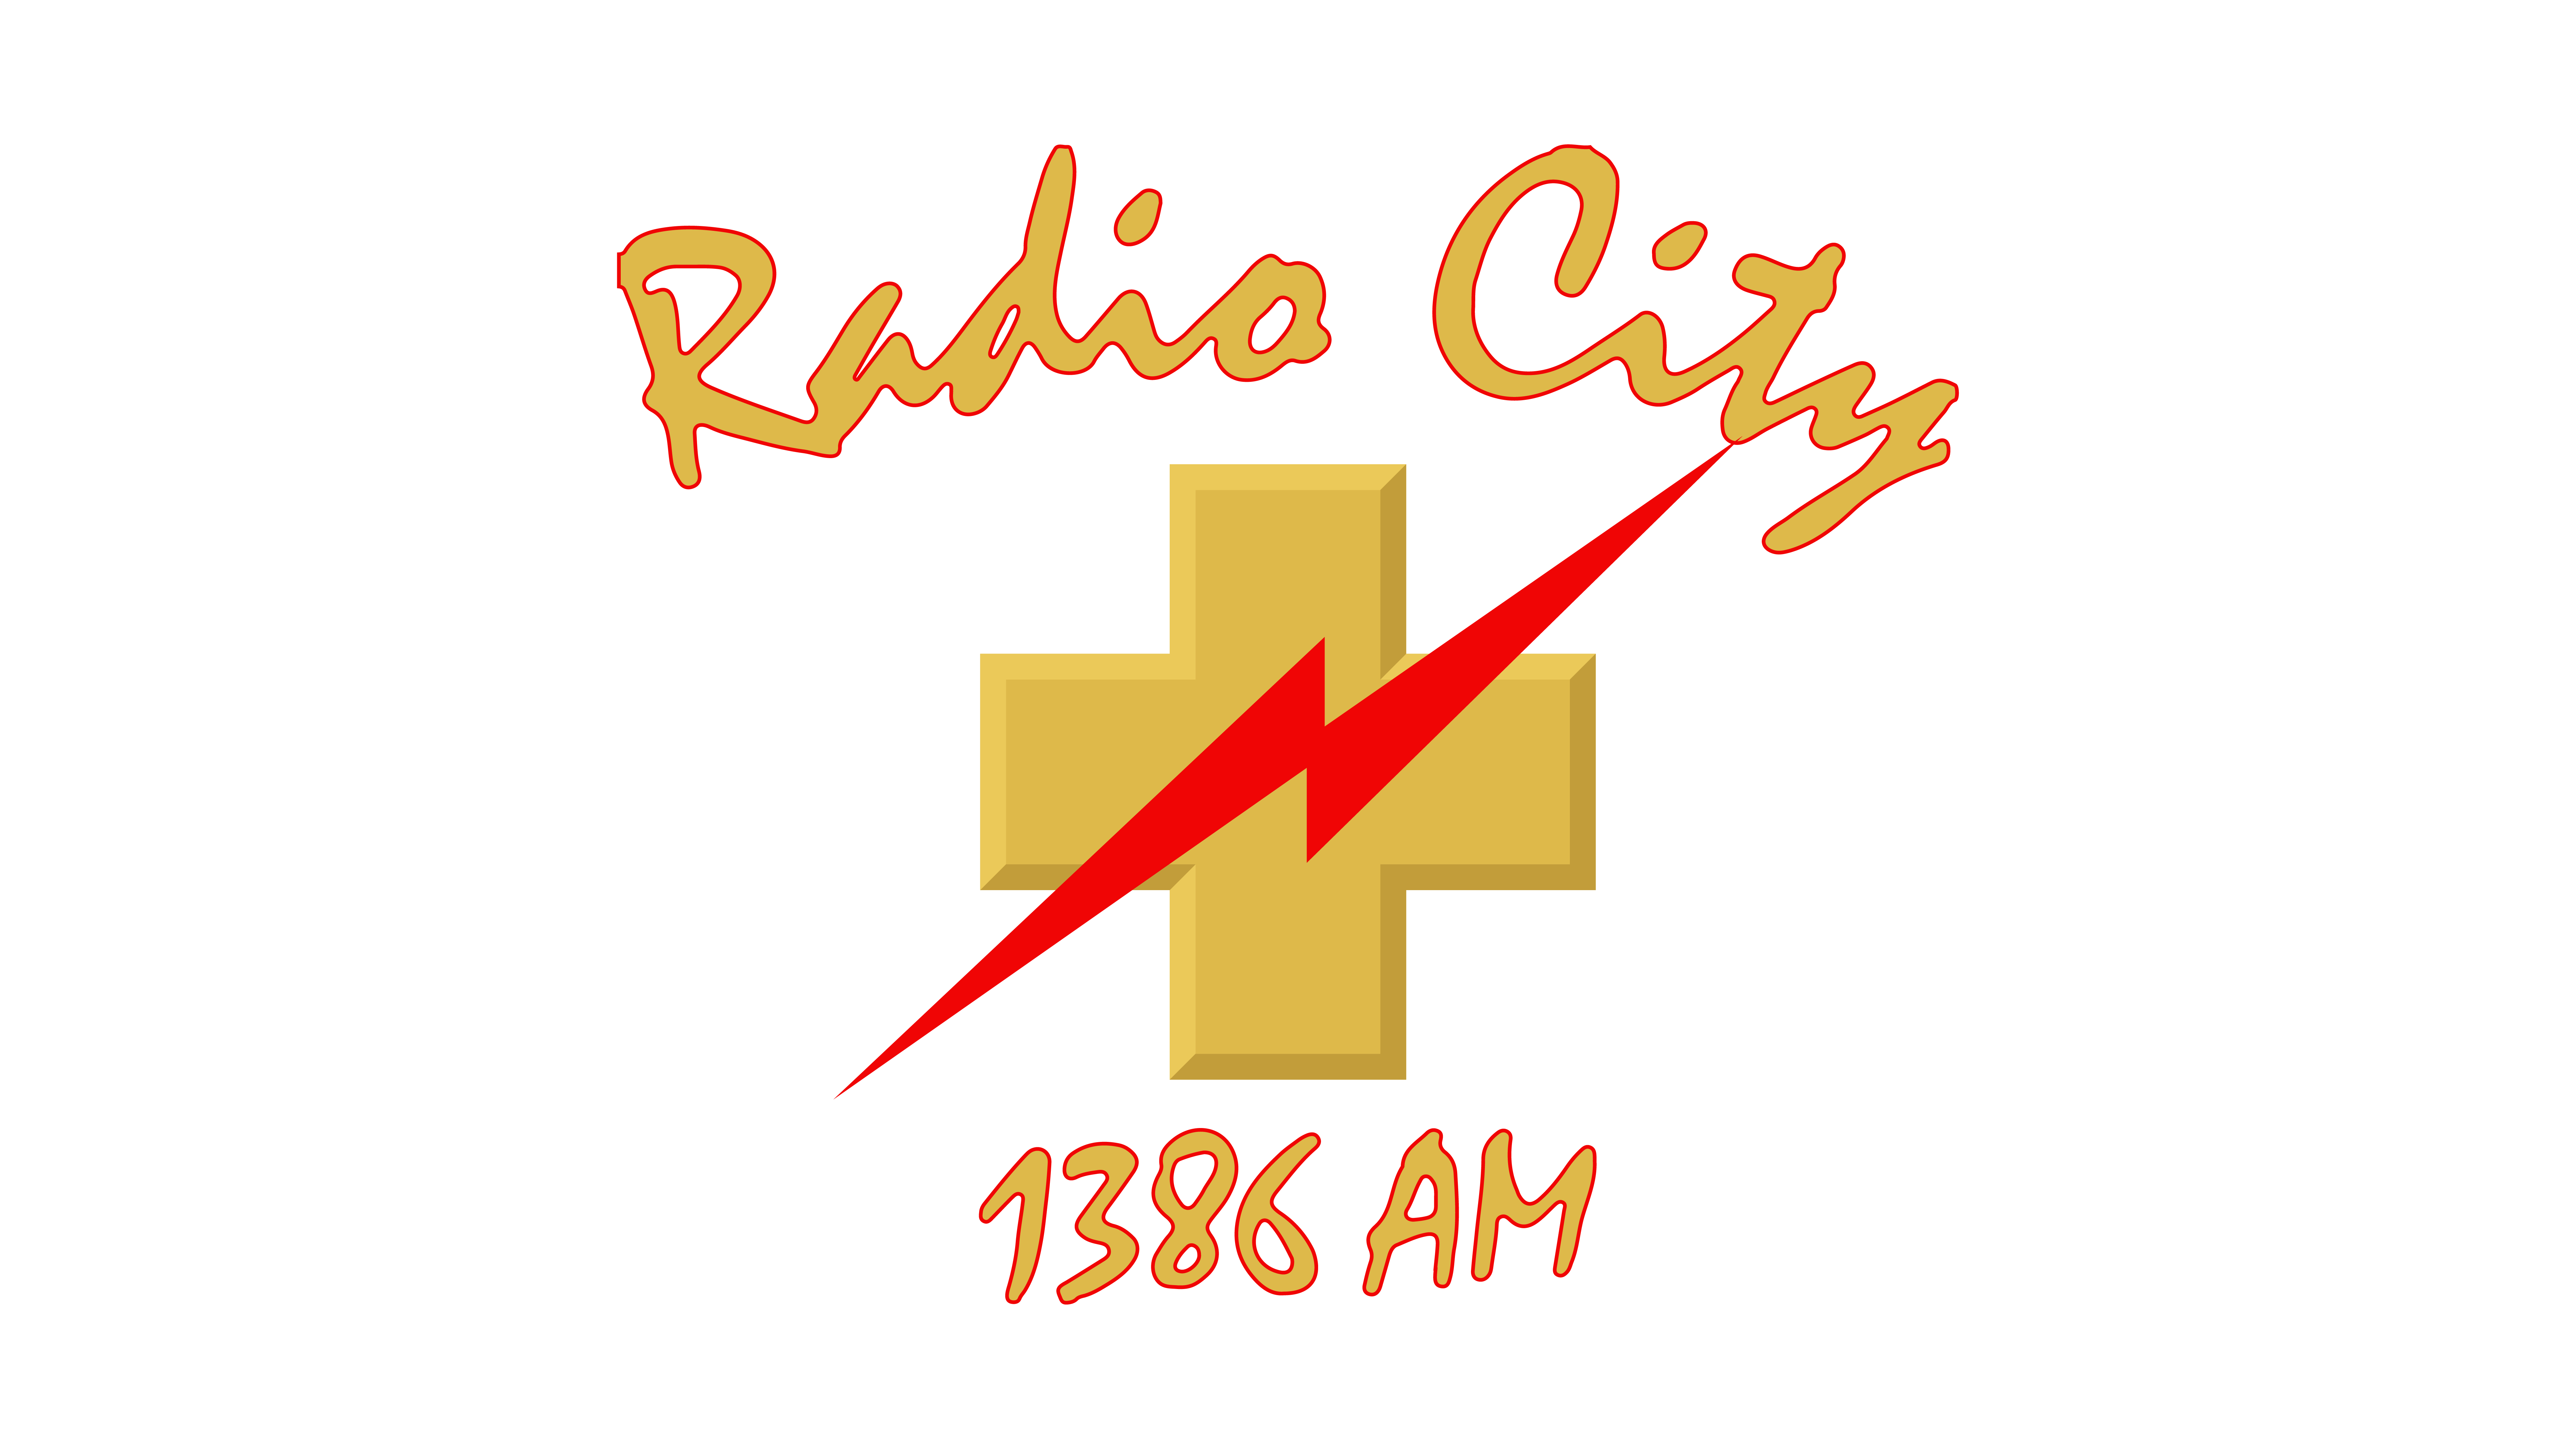 Radio City 1386AM